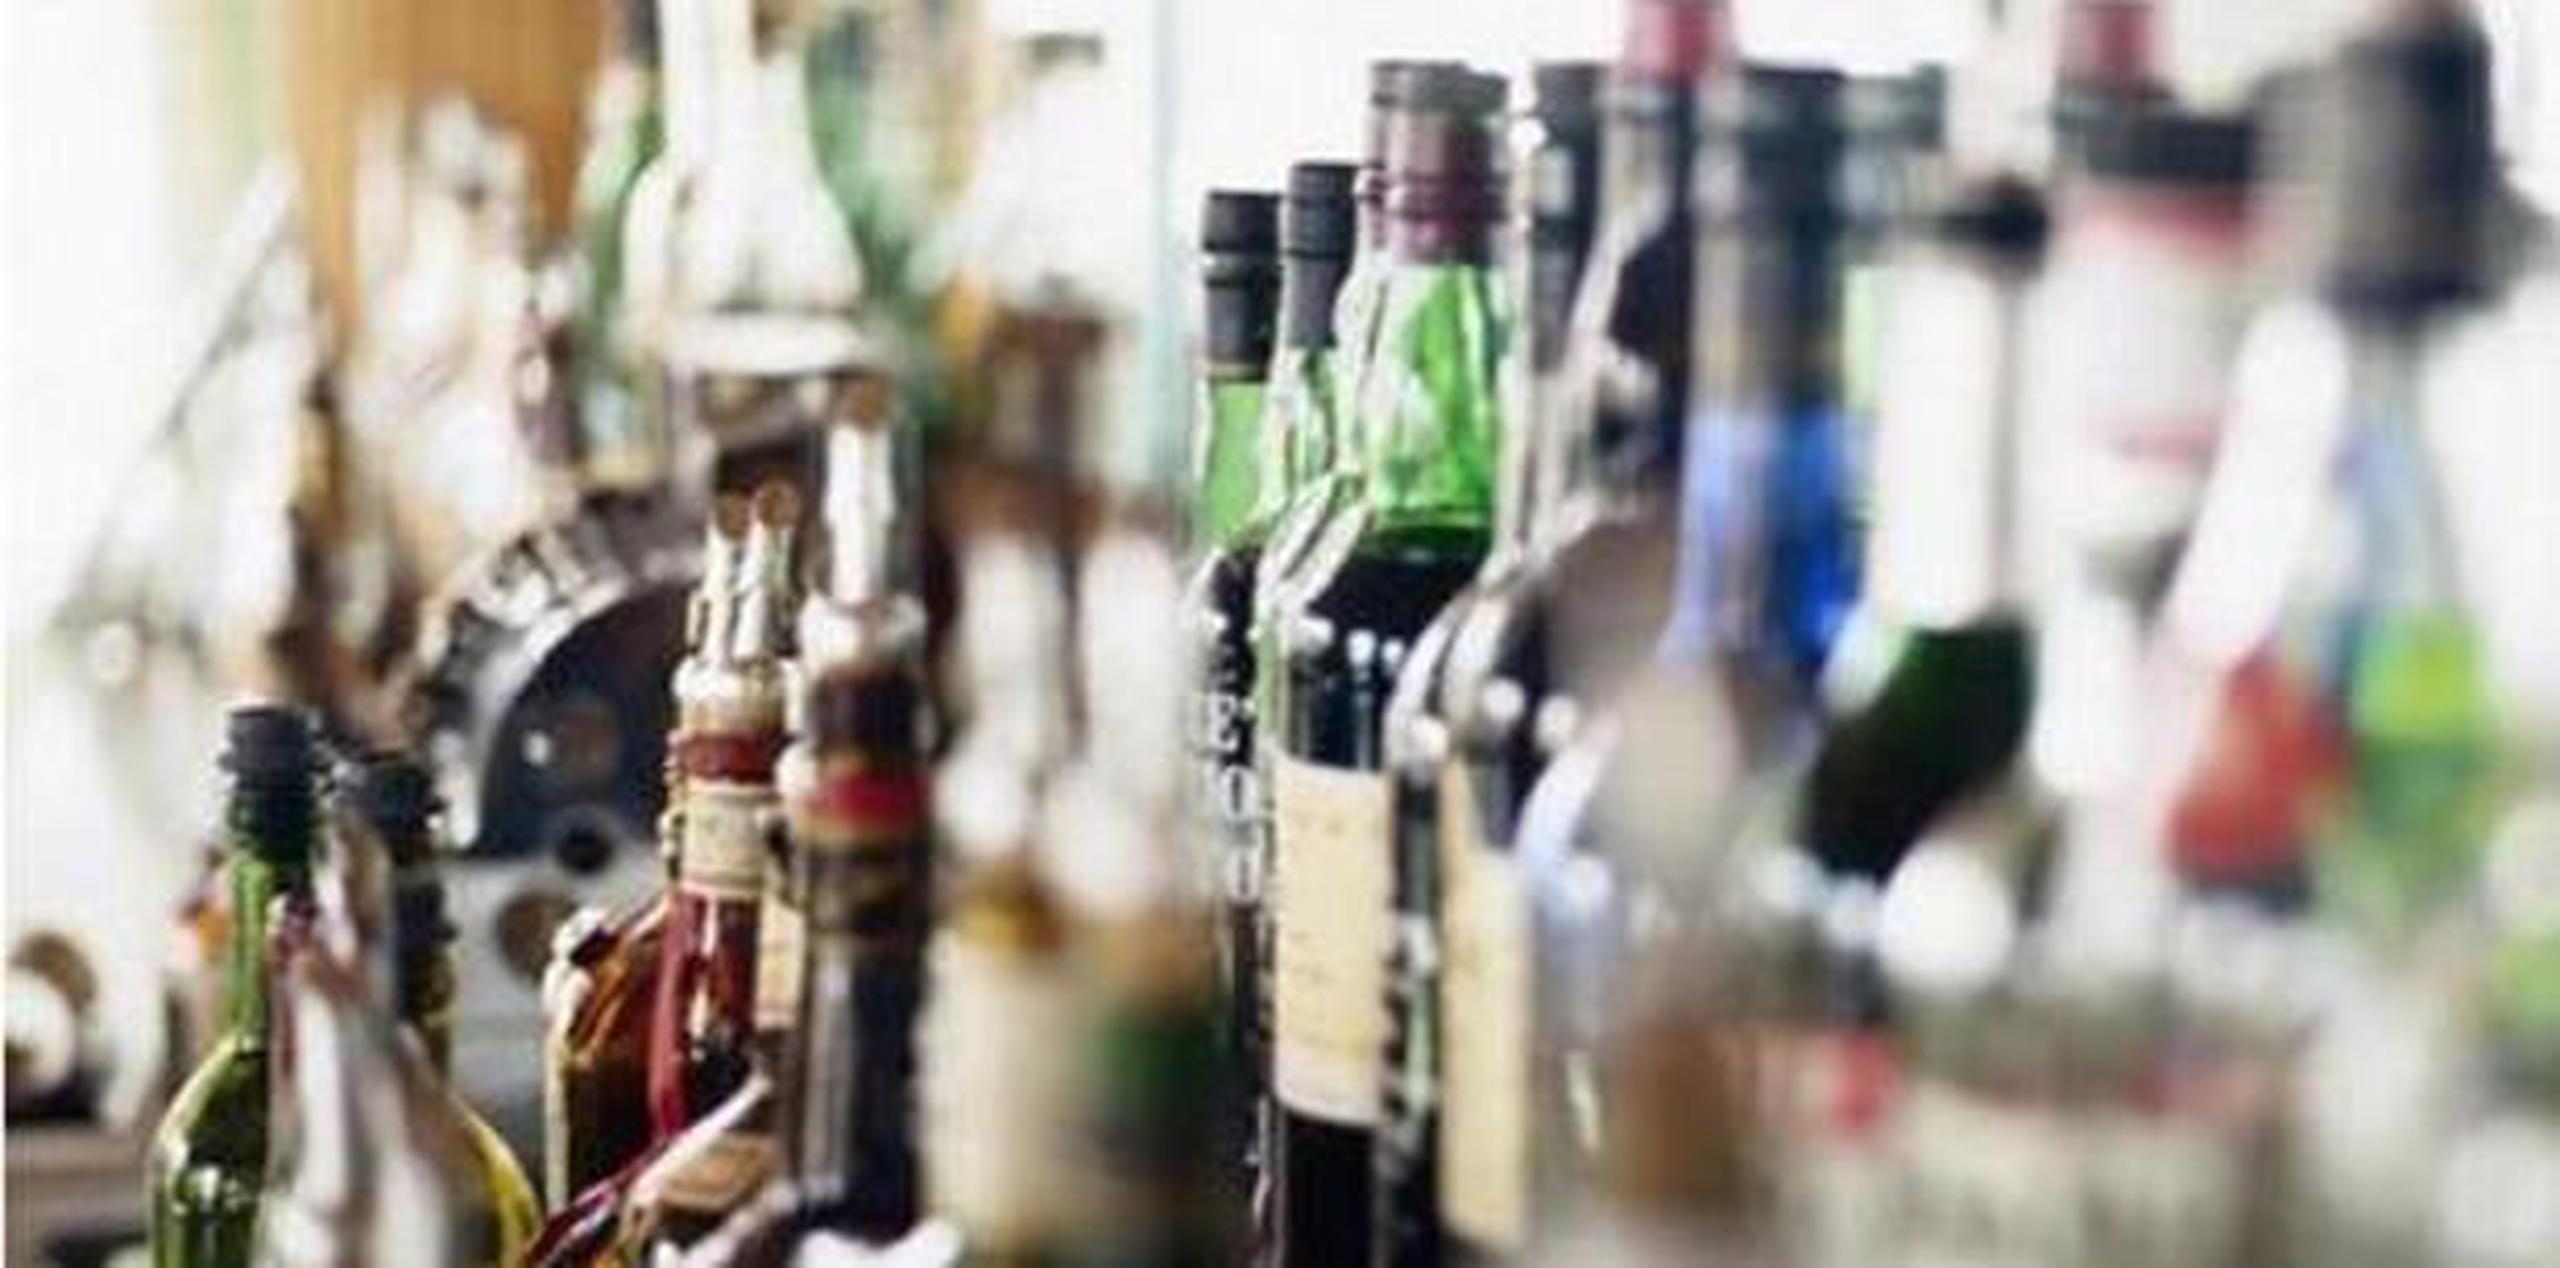 El valor del licor robado en Barranquitas se estimó en $1,300. (Archivo)